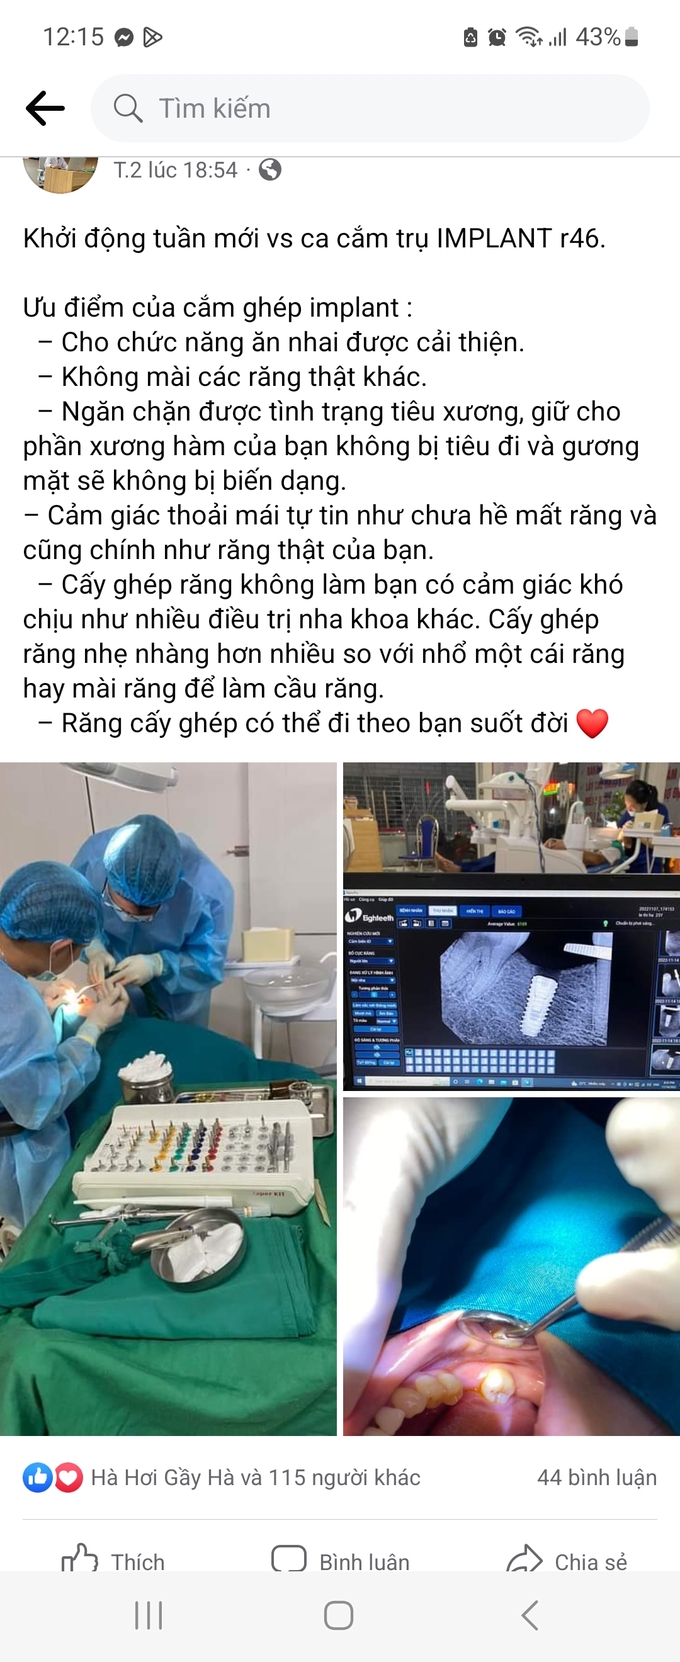 Trên toàn tỉnh Hà Tĩnh chỉ được một đến hai PK răng cấp phép làm dịch vụ cấy trụ implant nhưng bác sĩ Đức đã đăng tải QC trên trang cá nhân làm dịch vụ này tại PK